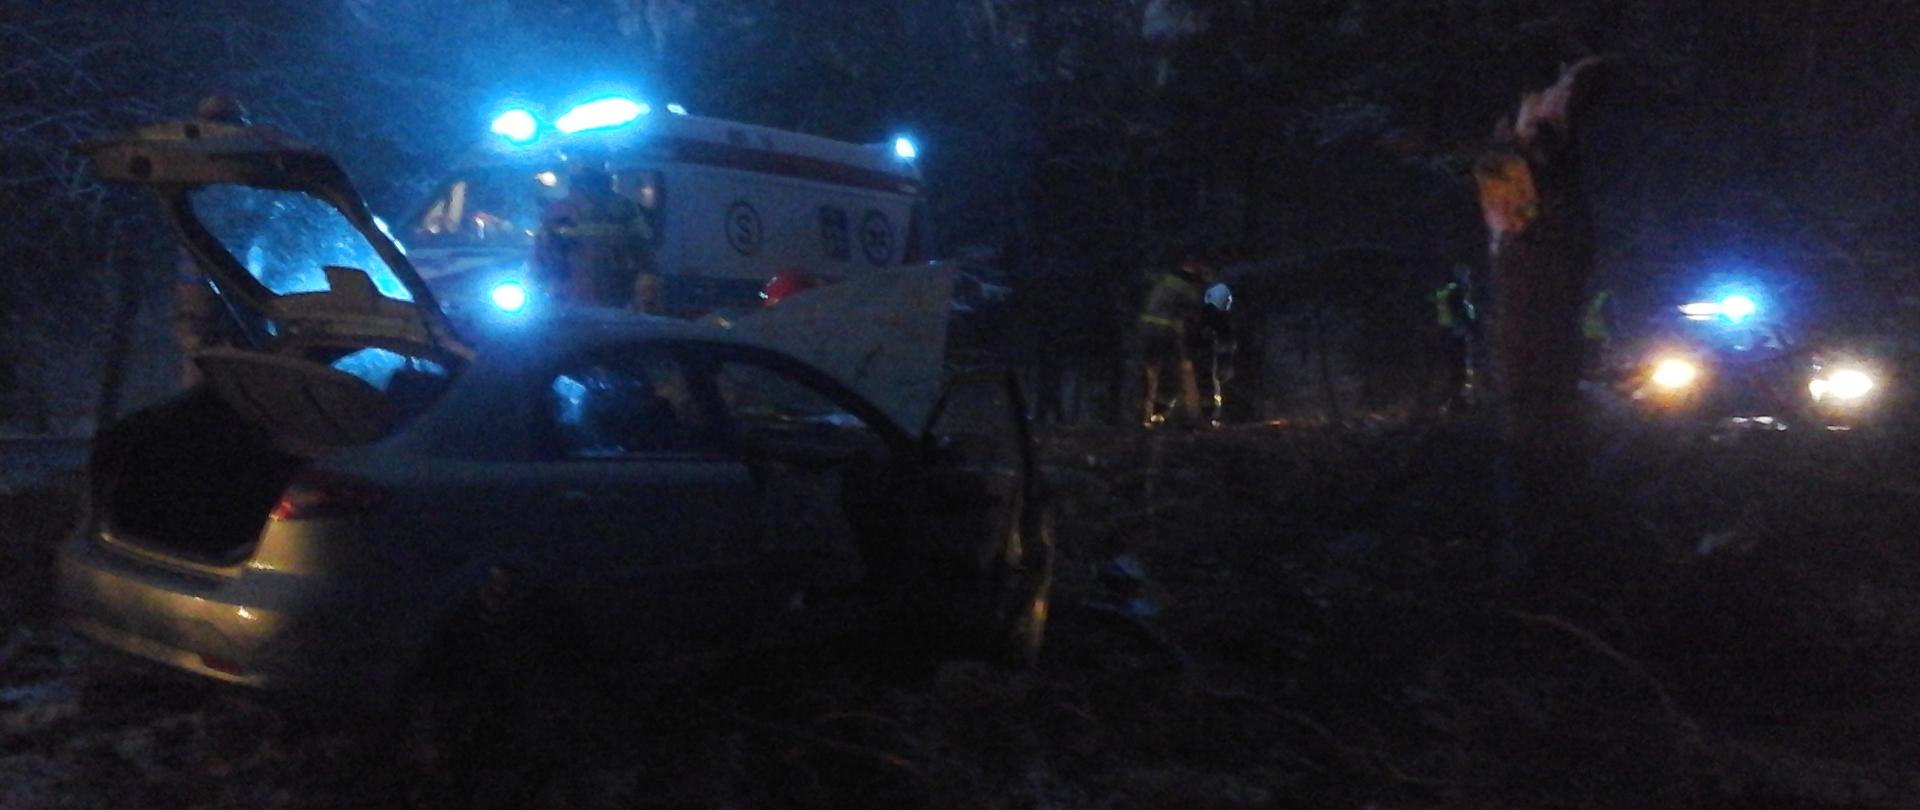 Uszkodzony samochód osobowy stojący w przydrożnym rowie po uderzeniu w drzewo. Konar drzewa złamany. W tle ambulans pogotowia ratunkowego.